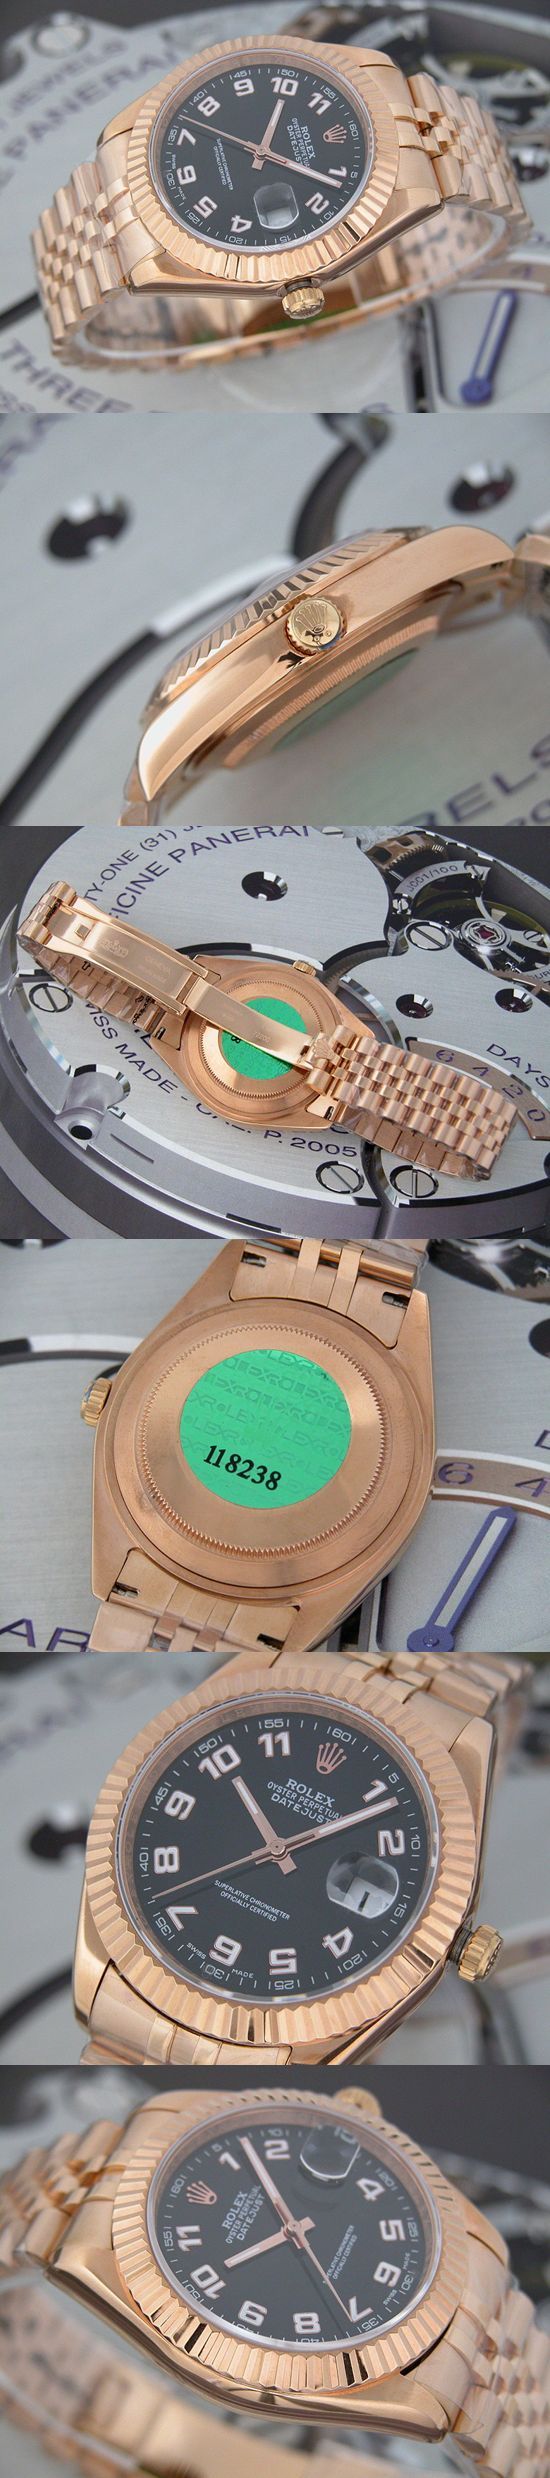 おしゃれなブランド時計がロレックス-デイトジャスト-ROLEX-118238-108-男性用を提供します.